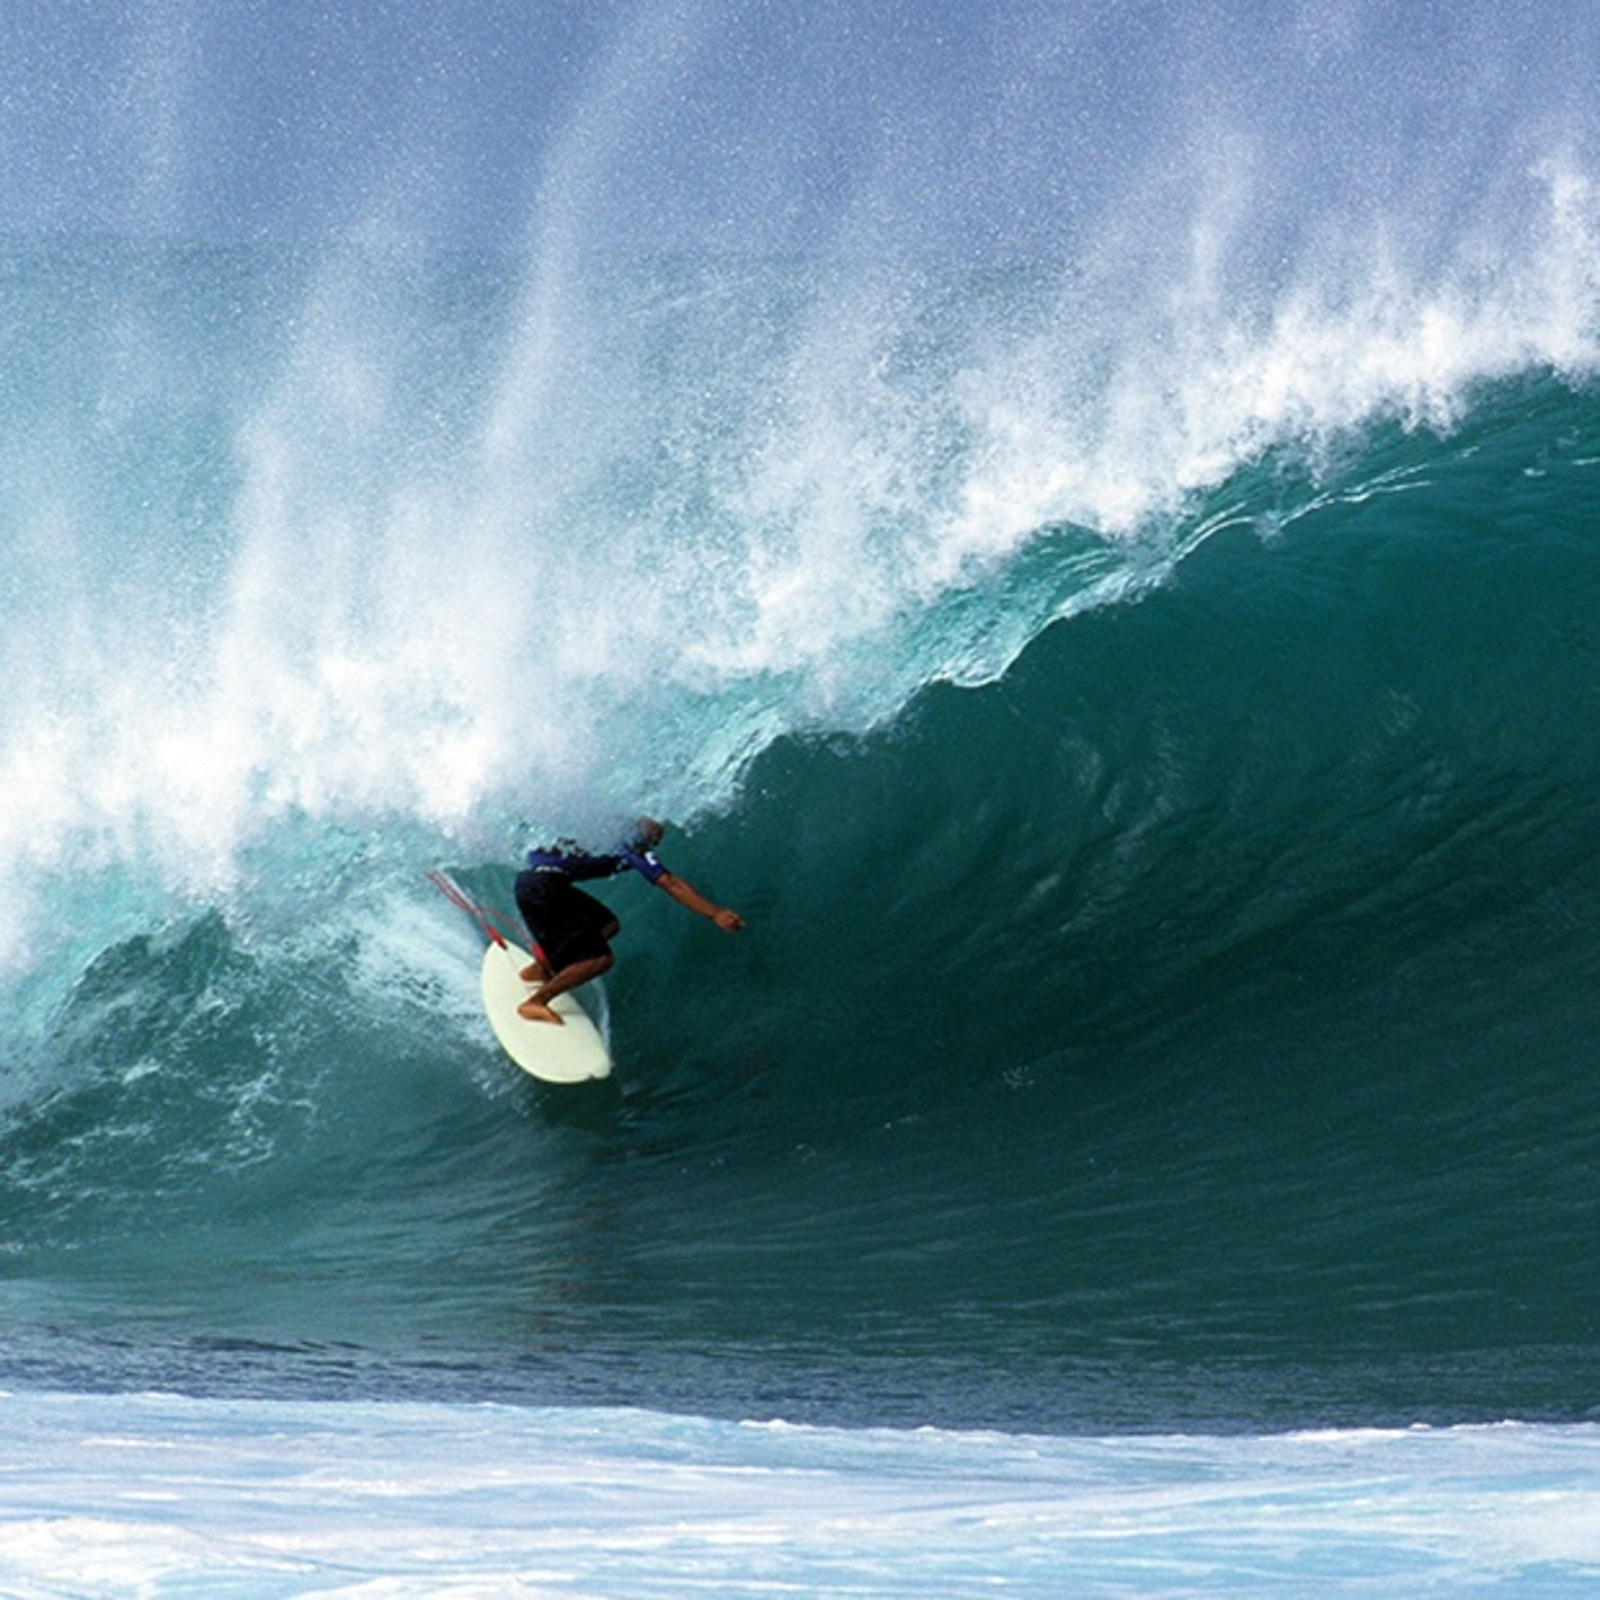 Surfer riding a large, crashing wave